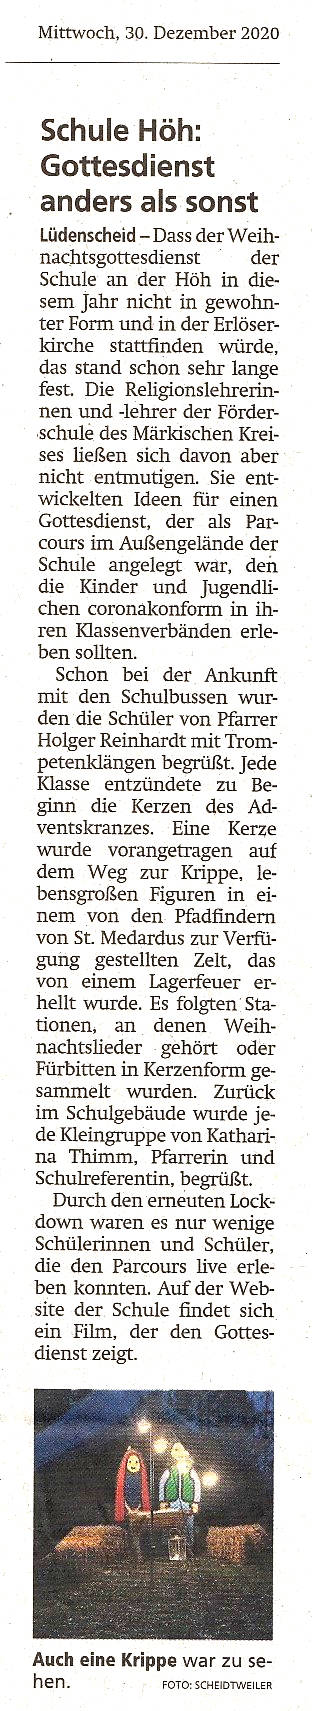 Lüdenscheider Nachrichten vom 30.12.2020